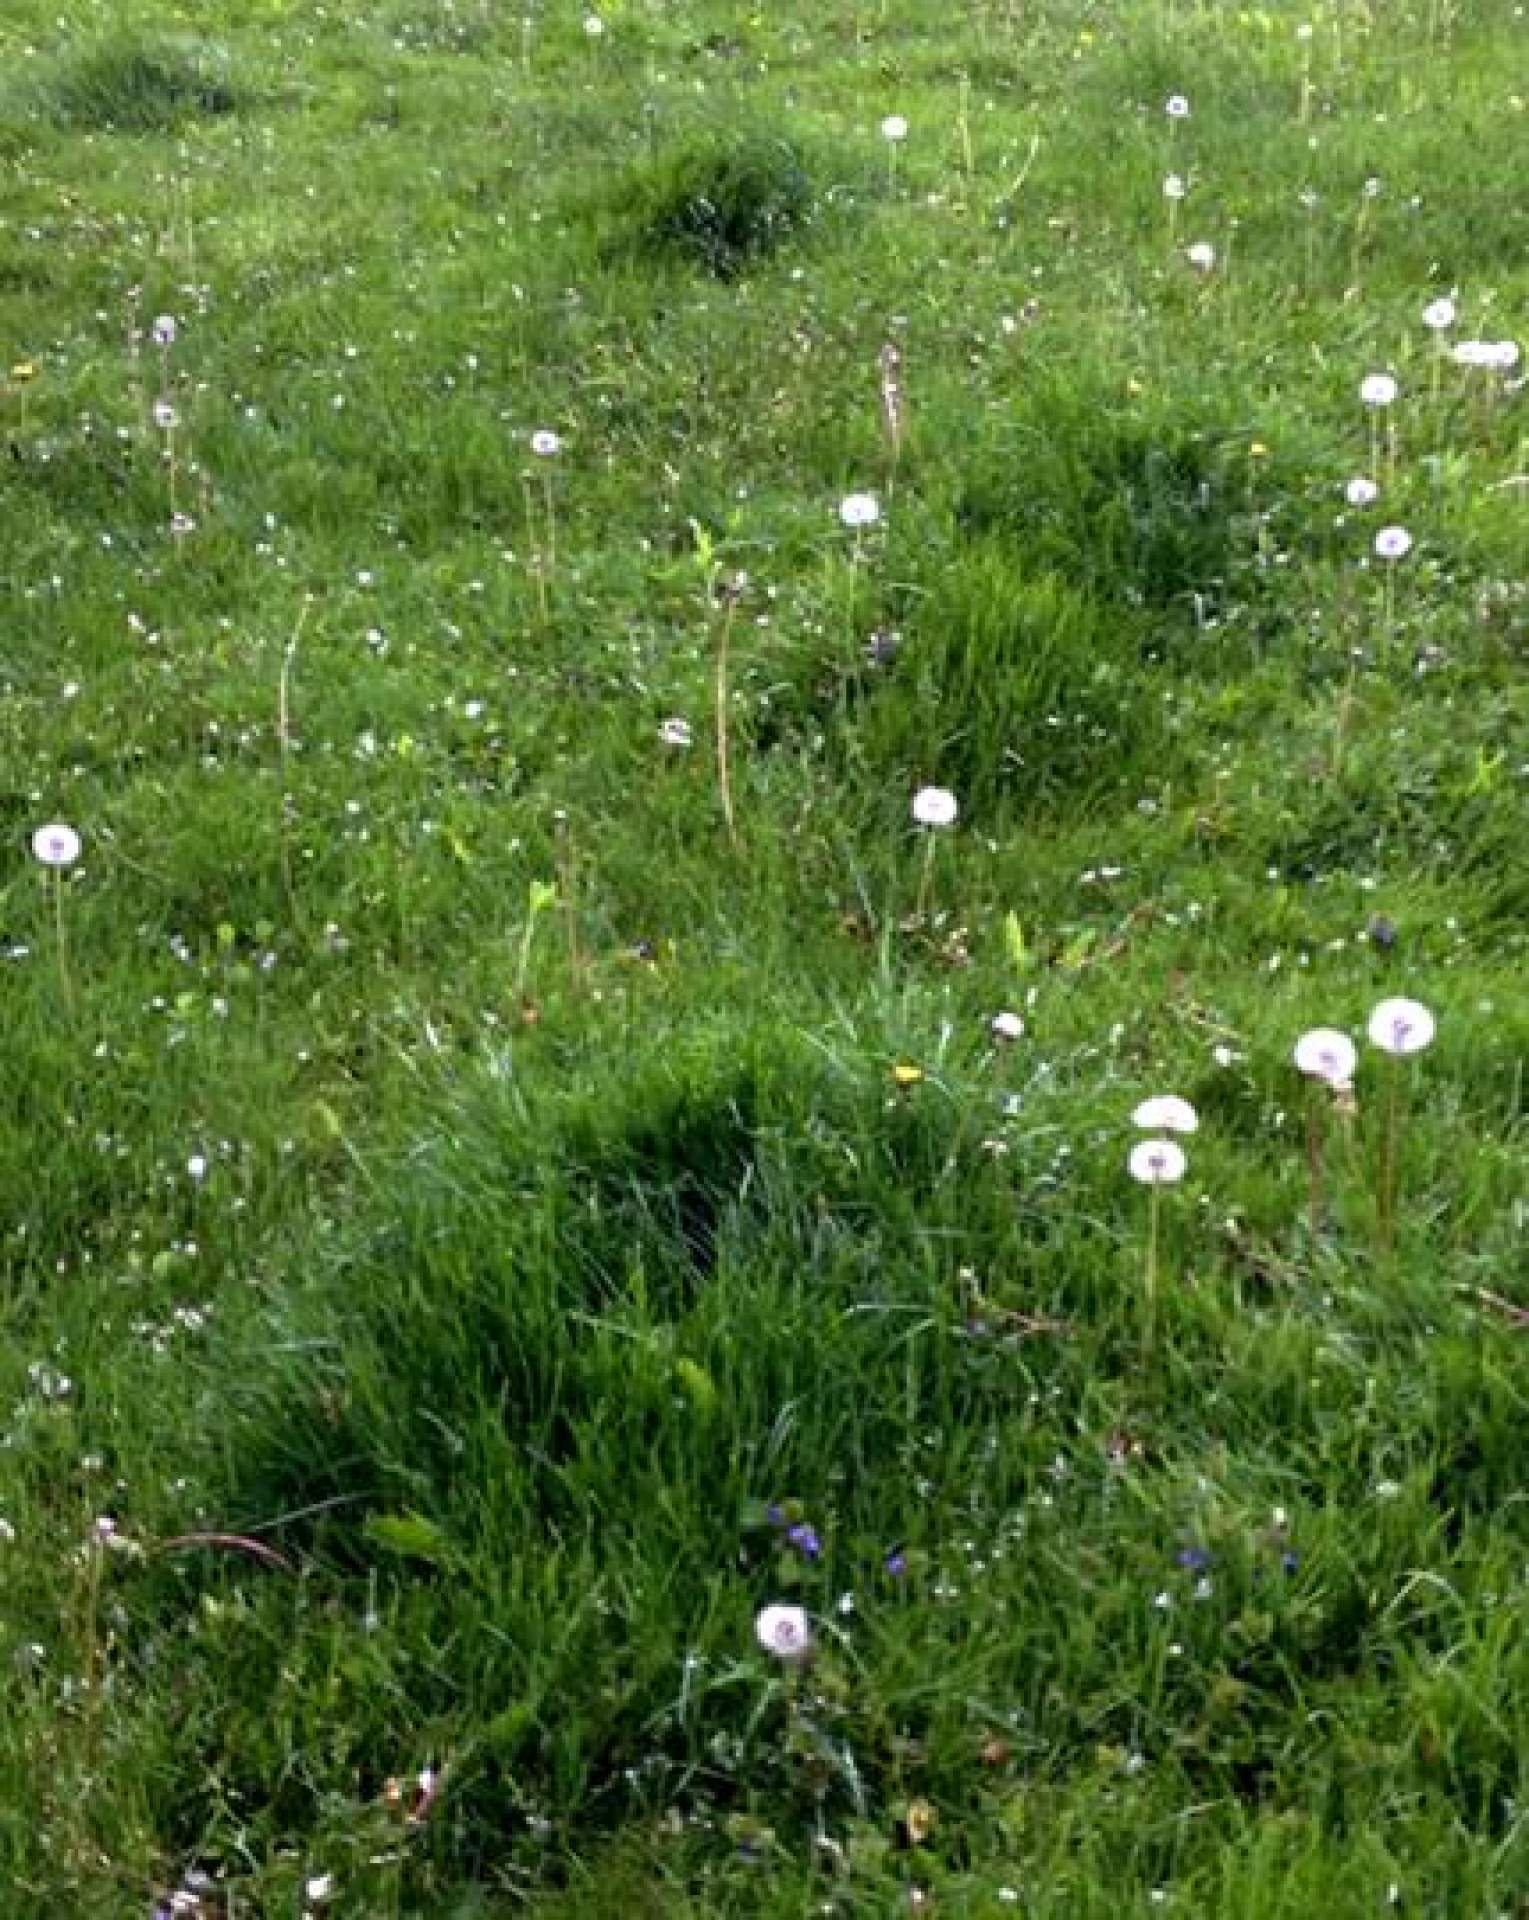 Dandelion Seed Heads in My Back Yard